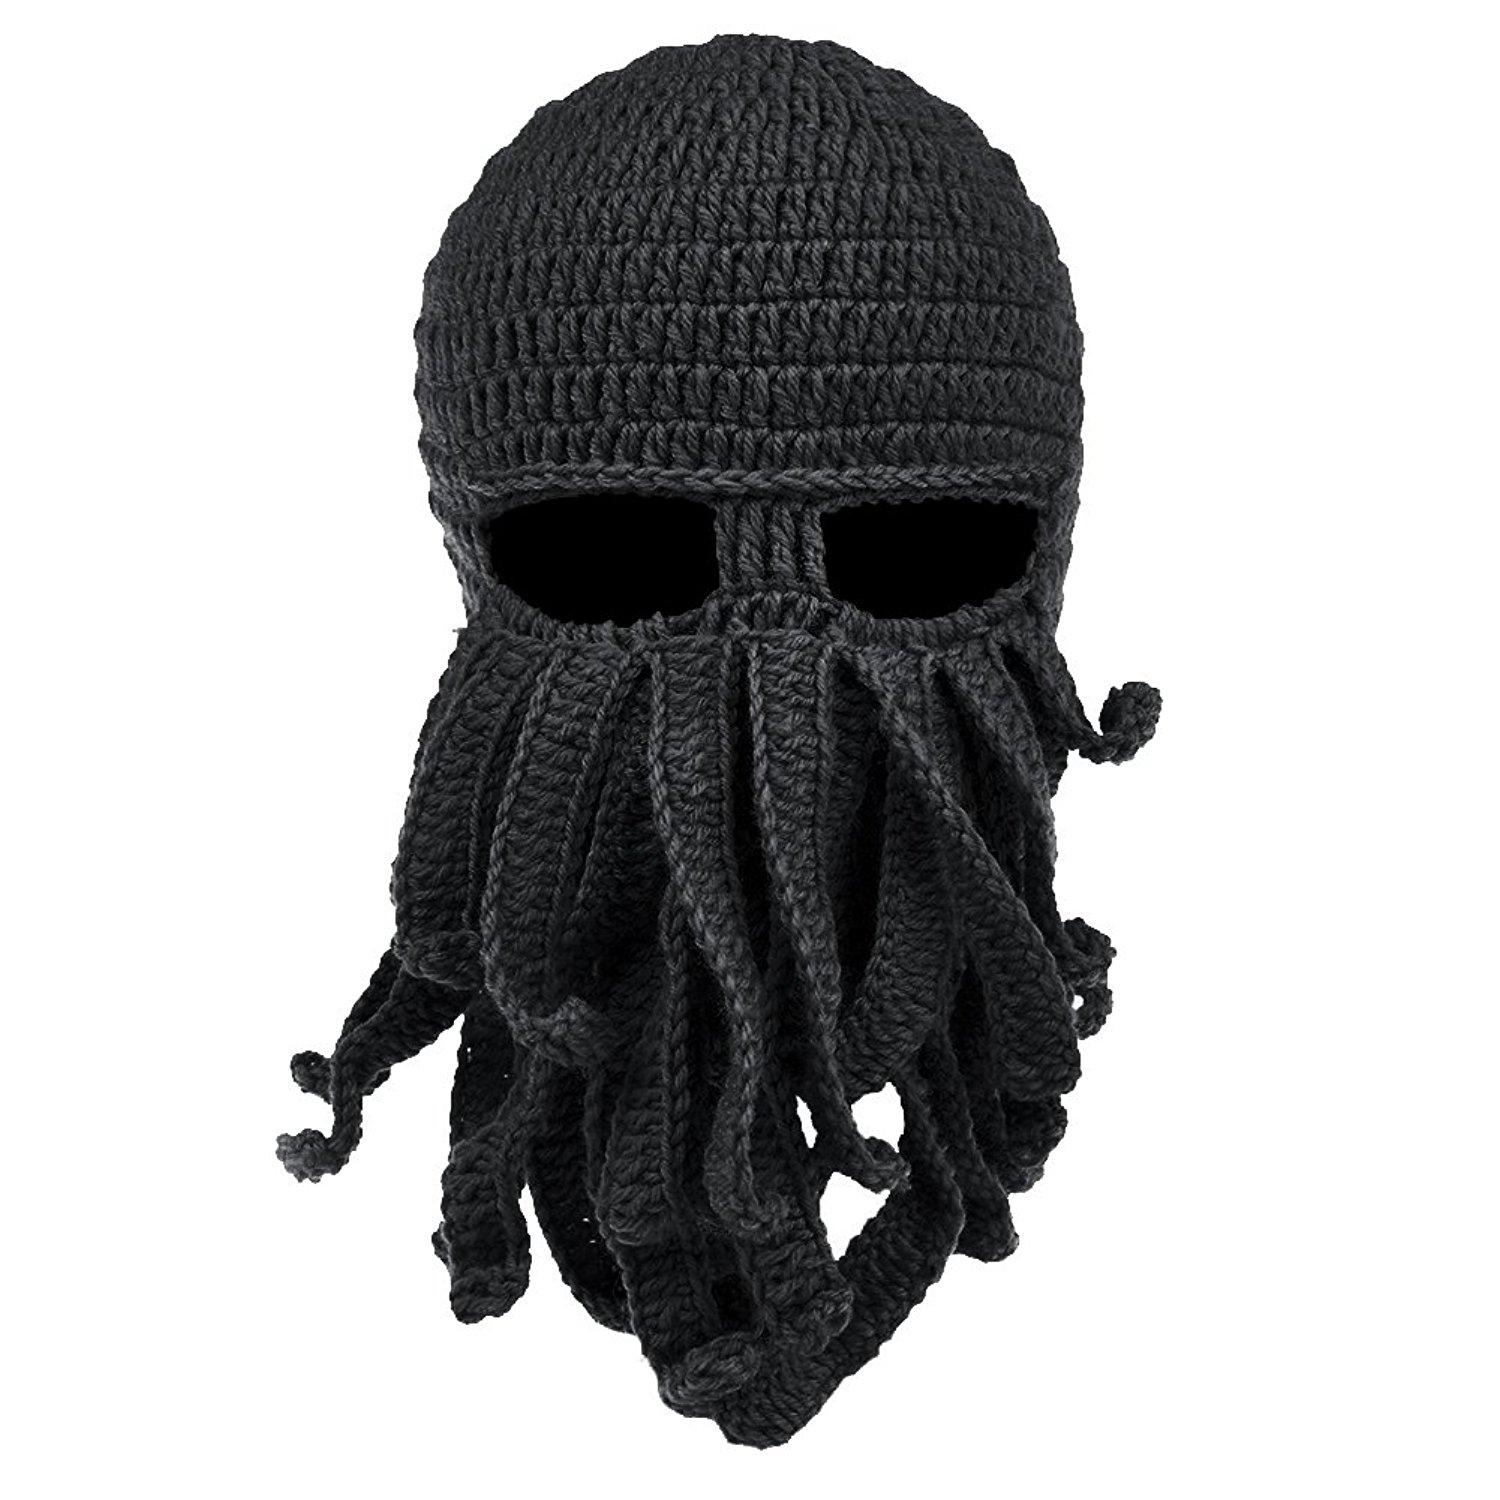 knit cap vbiger beard hat beanie hat knit hat winter warm octopus hat windproof boerzmh